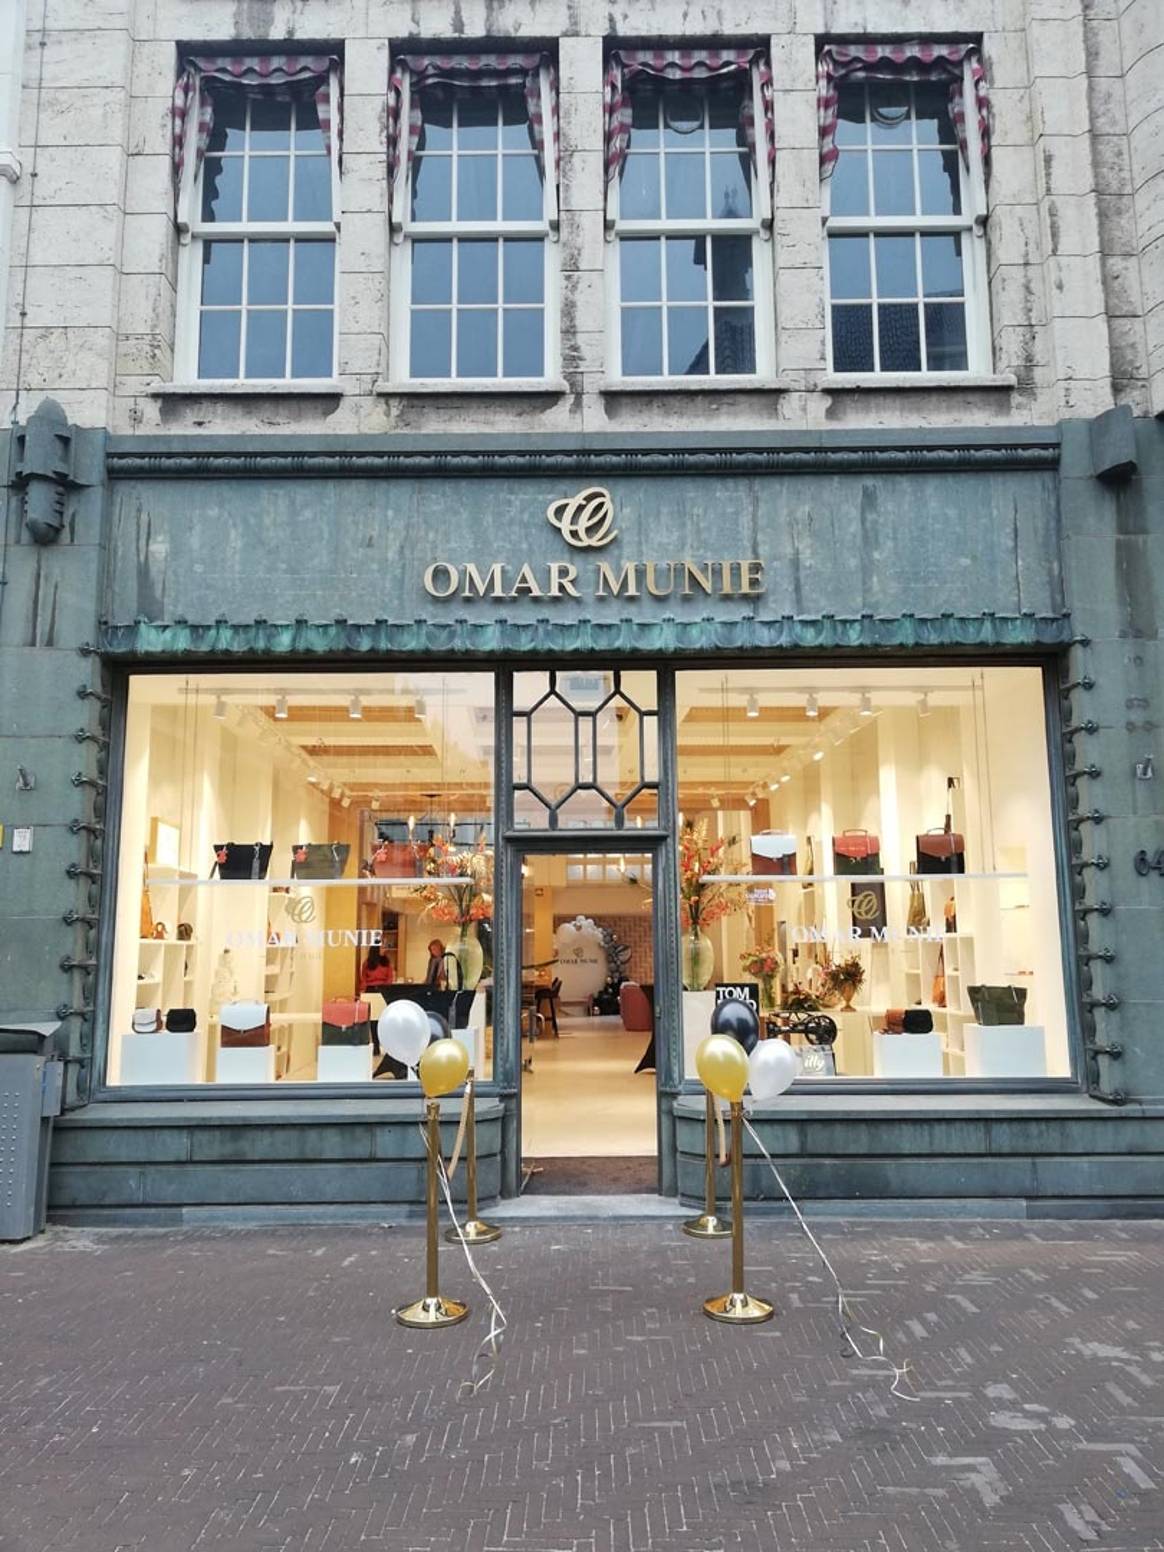 Binnenkijken: de koninklijke winkel van Omar Munie